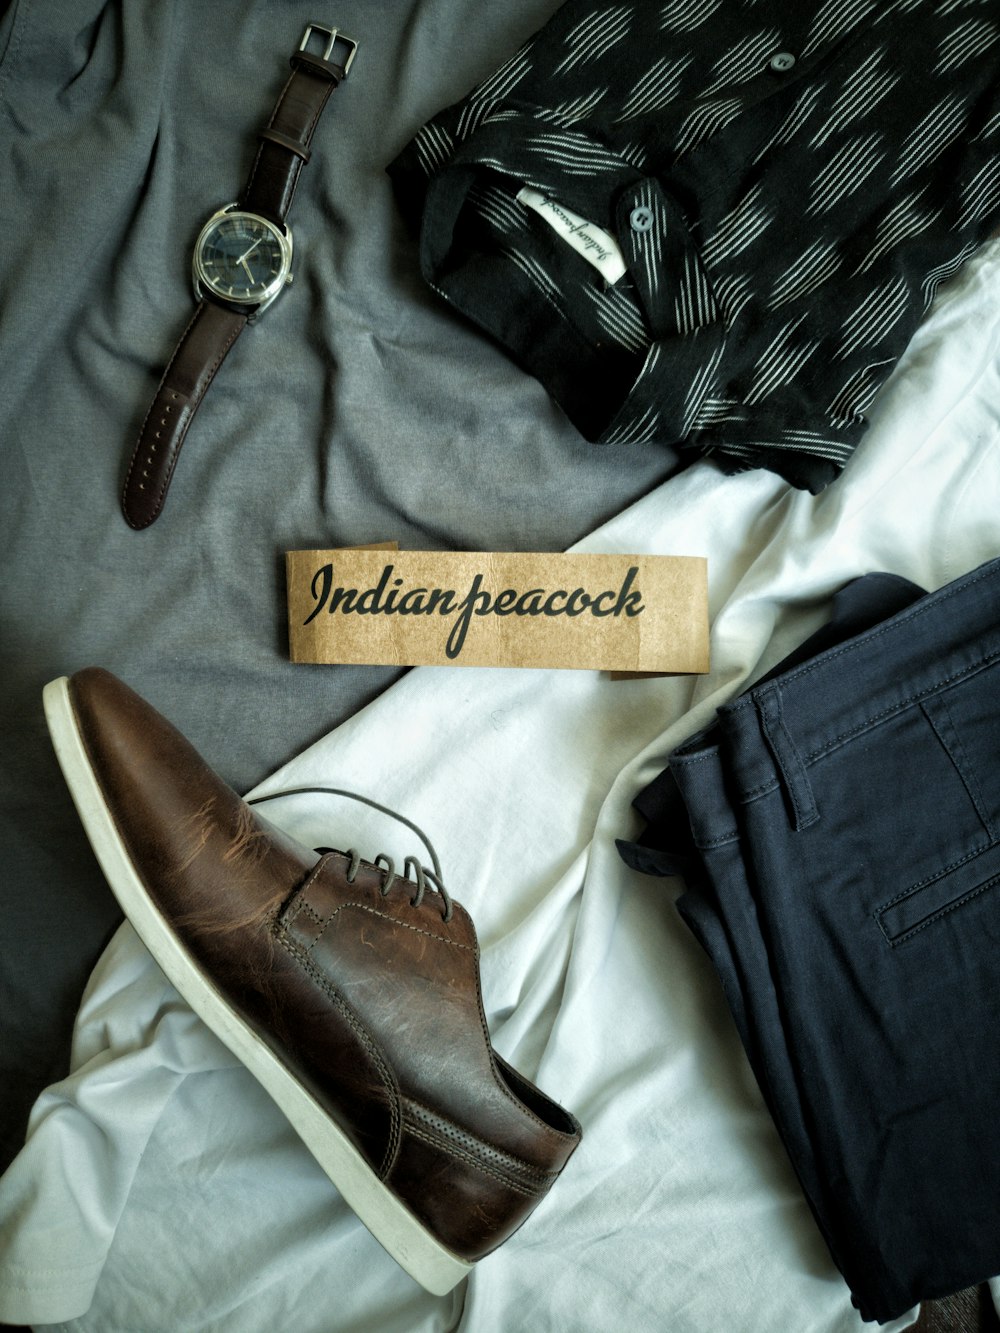 jeans blu denim accanto cinturino in pelle marrone argento rotondo orologio analogico